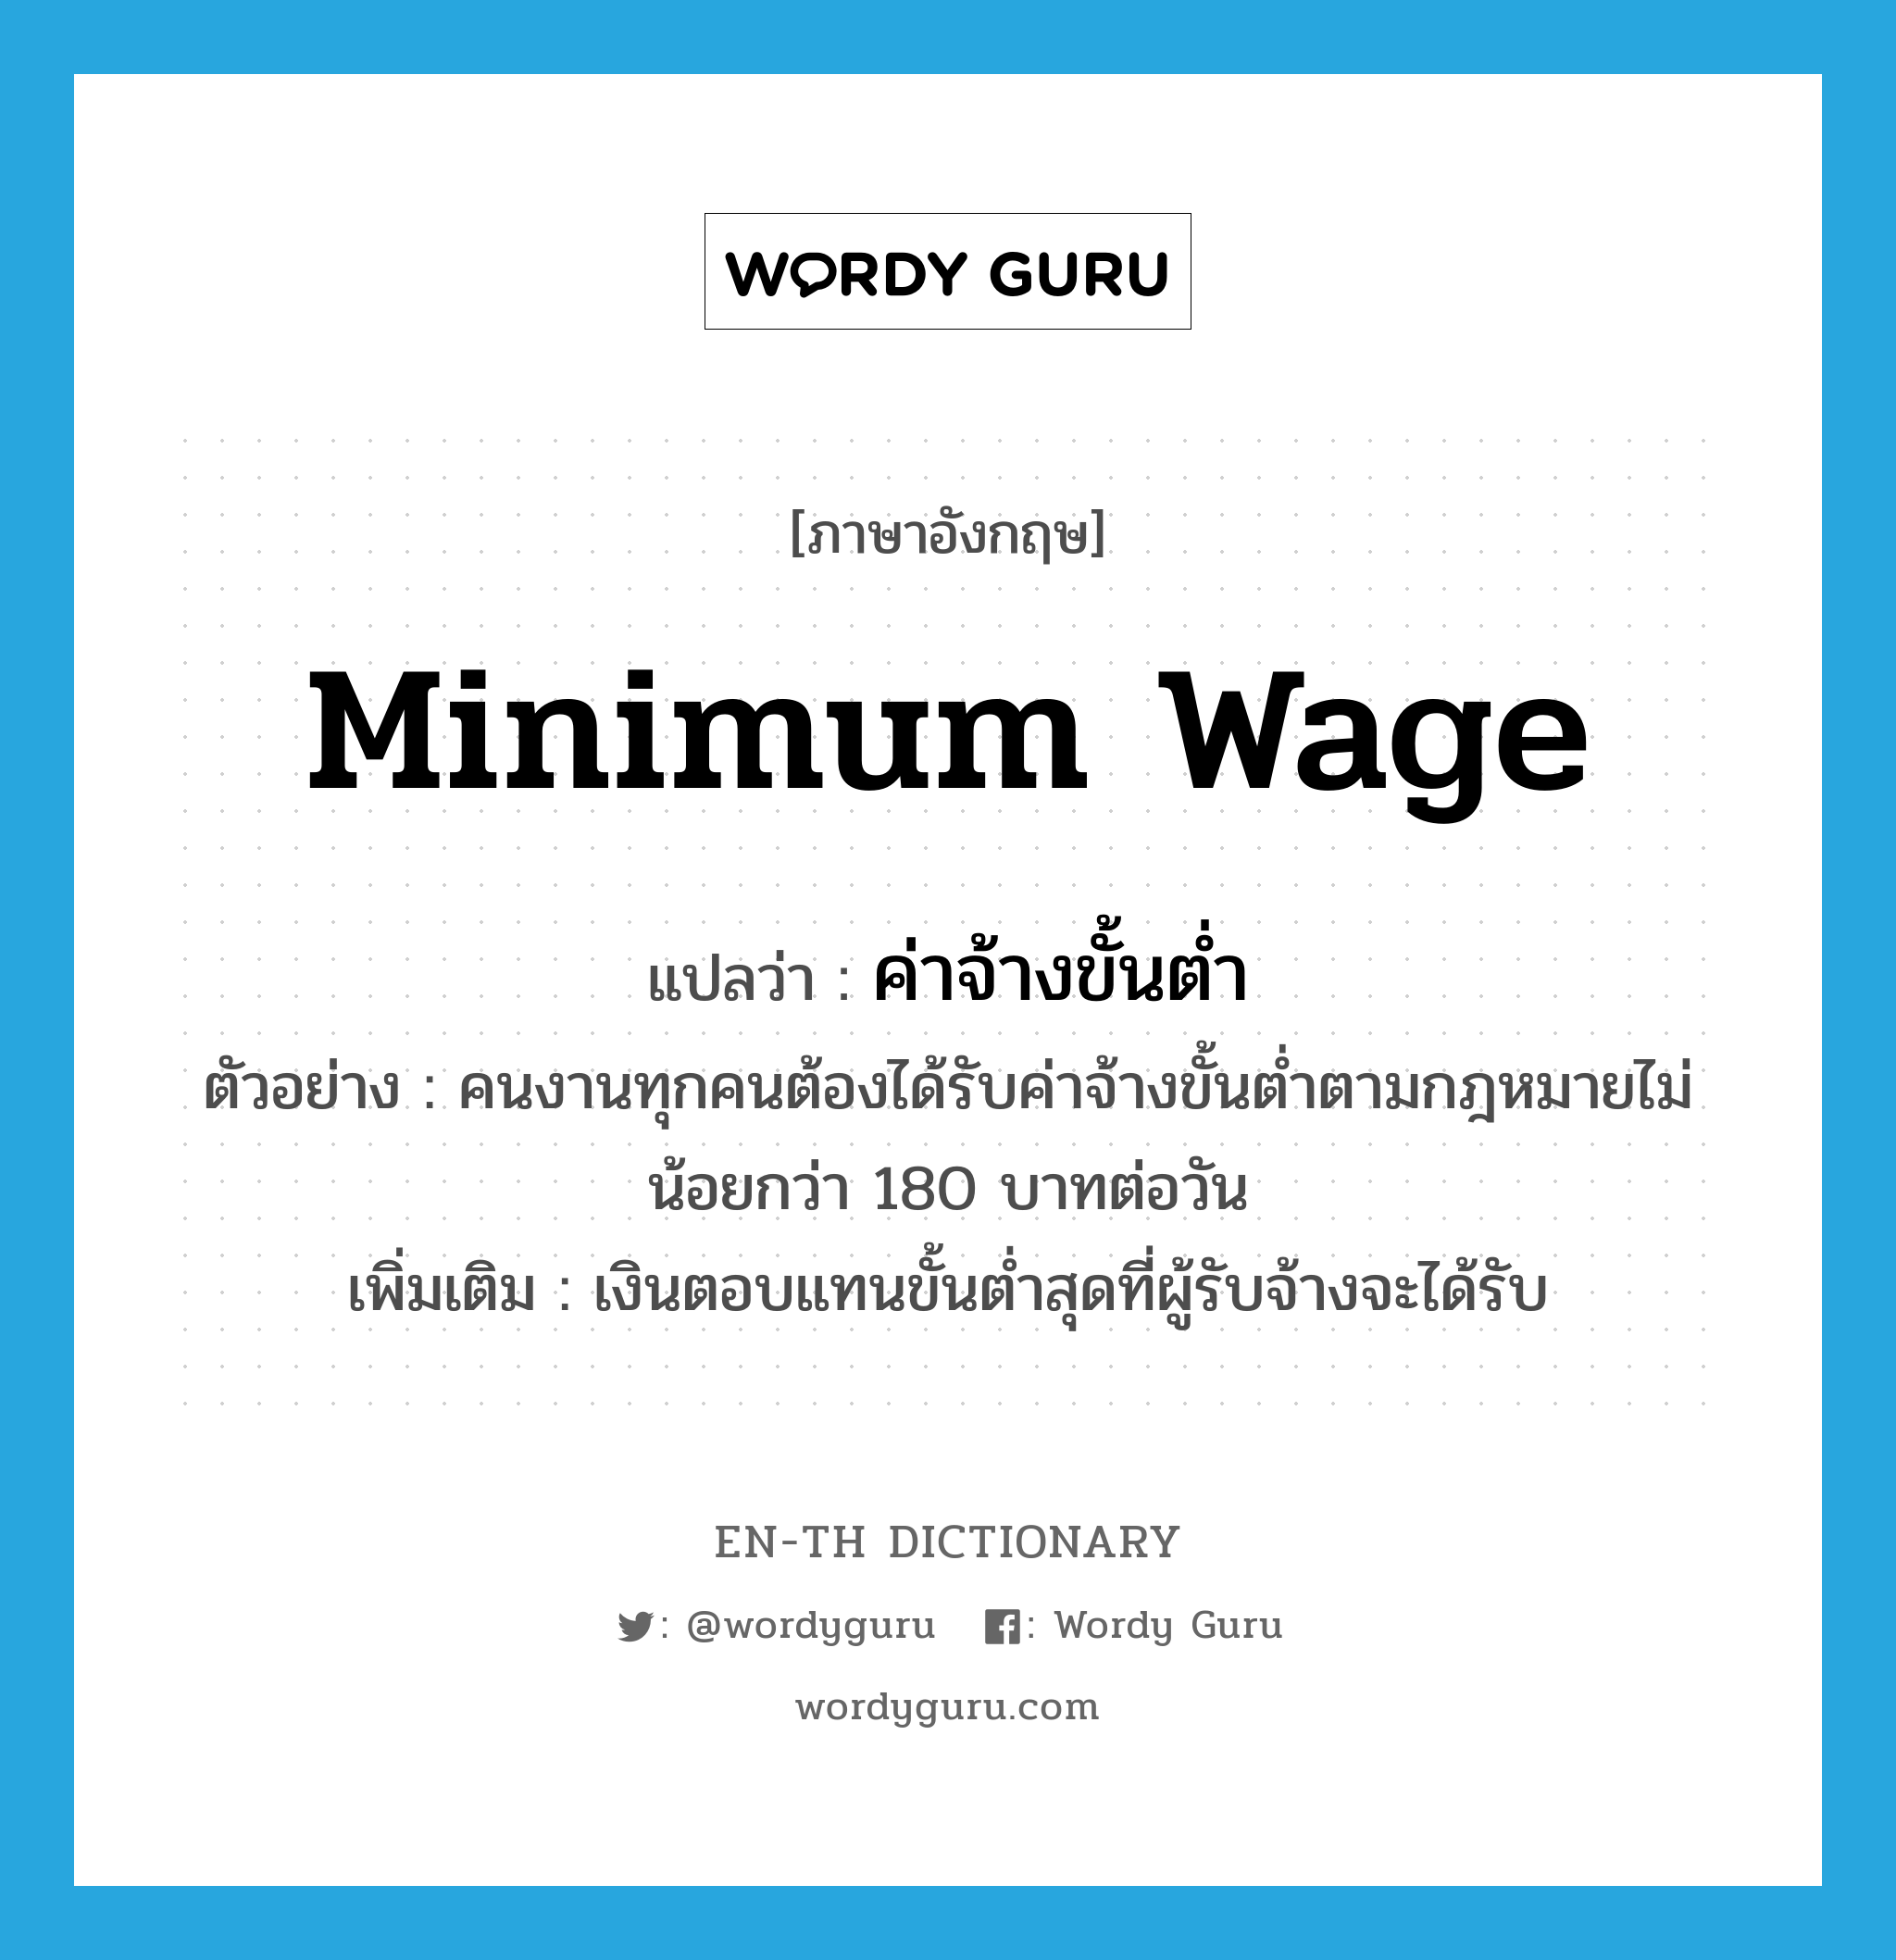 minimum wage แปลว่า?, คำศัพท์ภาษาอังกฤษ minimum wage แปลว่า ค่าจ้างขั้นต่ำ ประเภท N ตัวอย่าง คนงานทุกคนต้องได้รับค่าจ้างขั้นต่ำตามกฎหมายไม่น้อยกว่า 180 บาทต่อวัน เพิ่มเติม เงินตอบแทนขั้นต่ำสุดที่ผู้รับจ้างจะได้รับ หมวด N